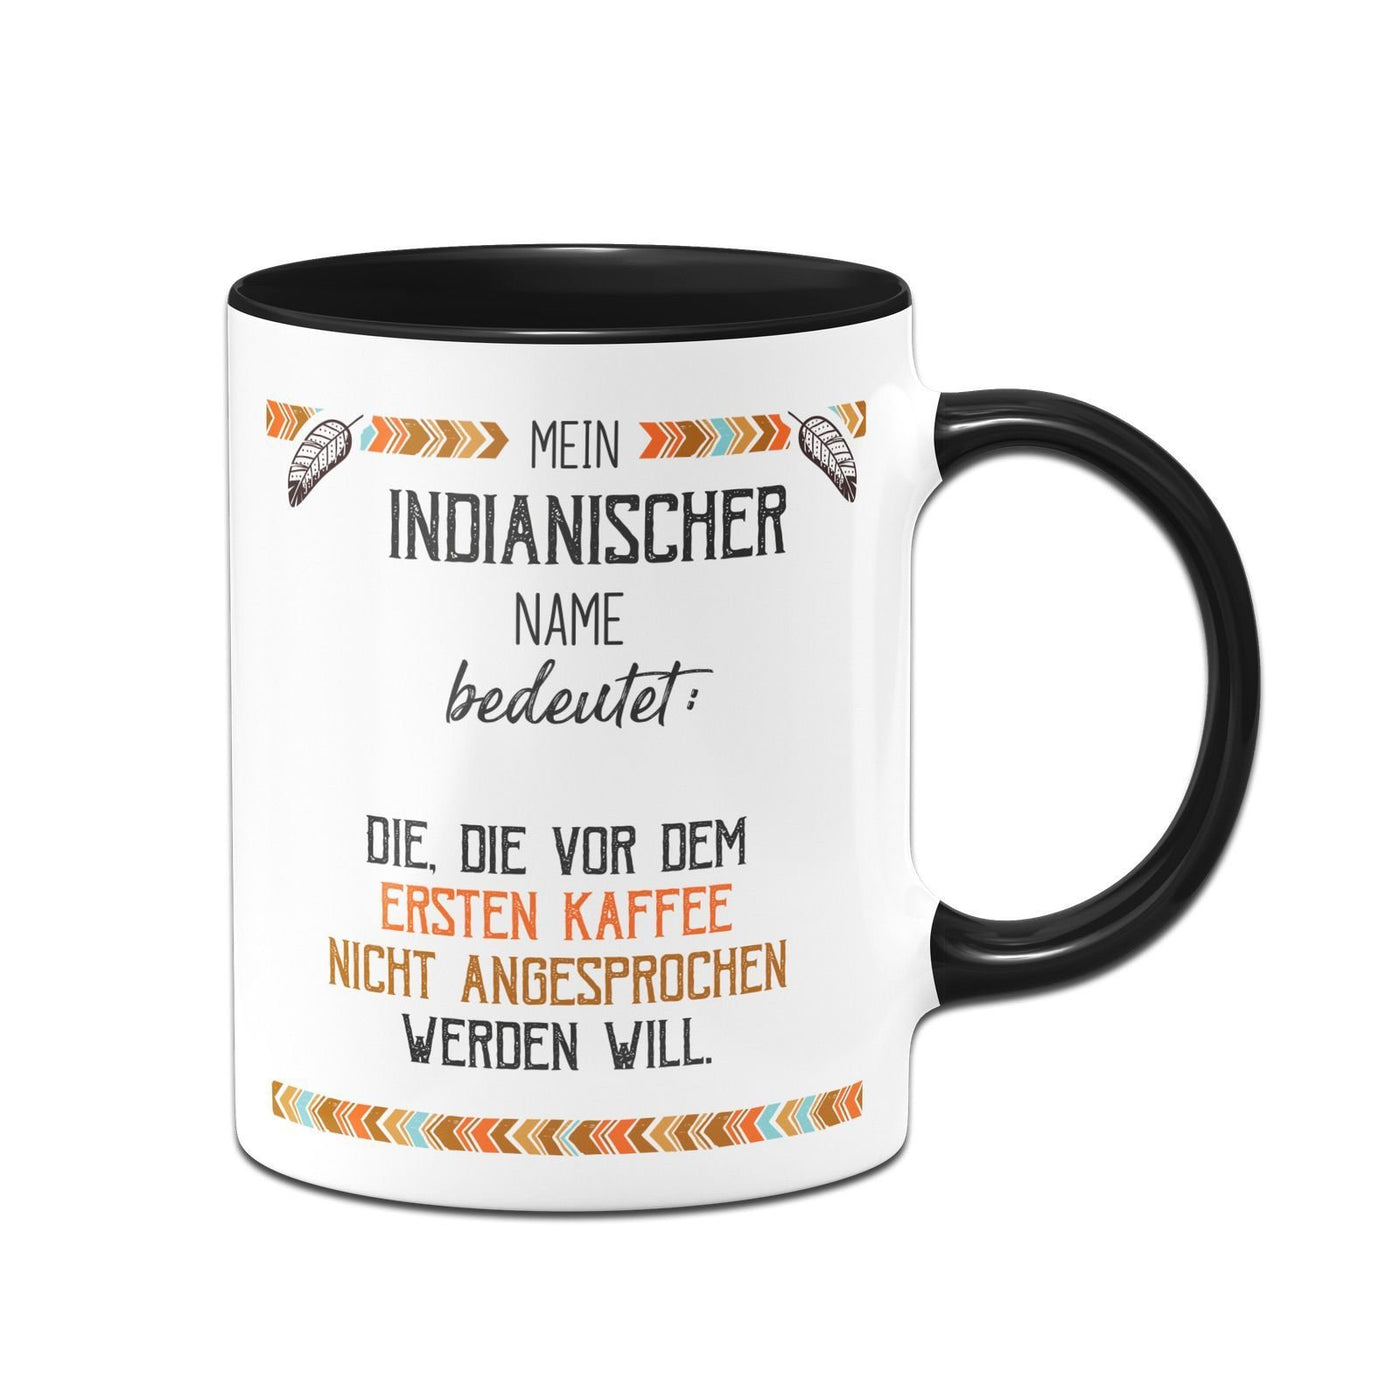 Bild: Tasse - Mein indianischer Name bedeutet: Nicht vor dem ersten Kaffee Geschenkidee